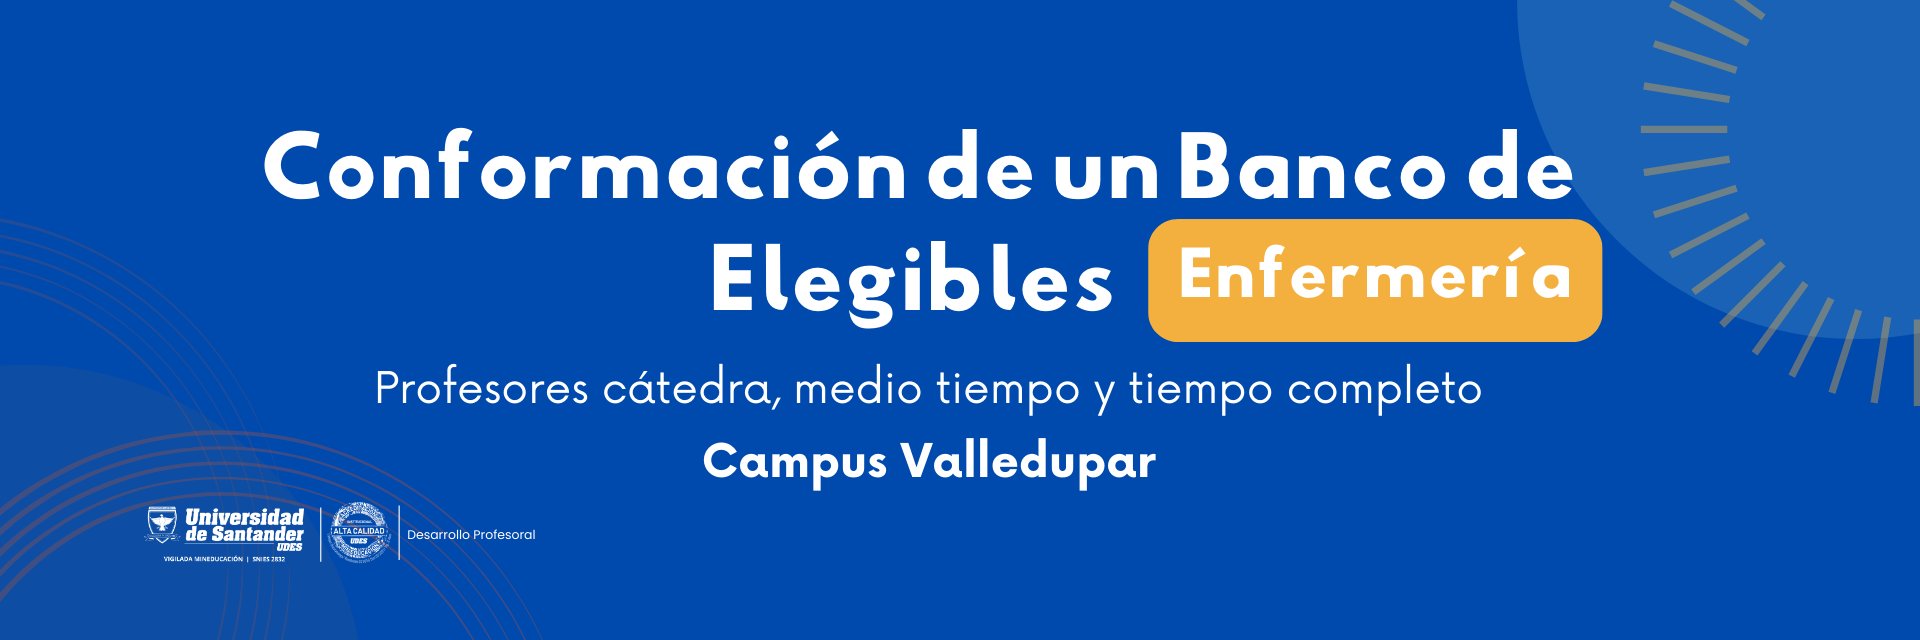 Convocatoria conformación banco de elegibles para programa de Enfermería – Campus Valledupar